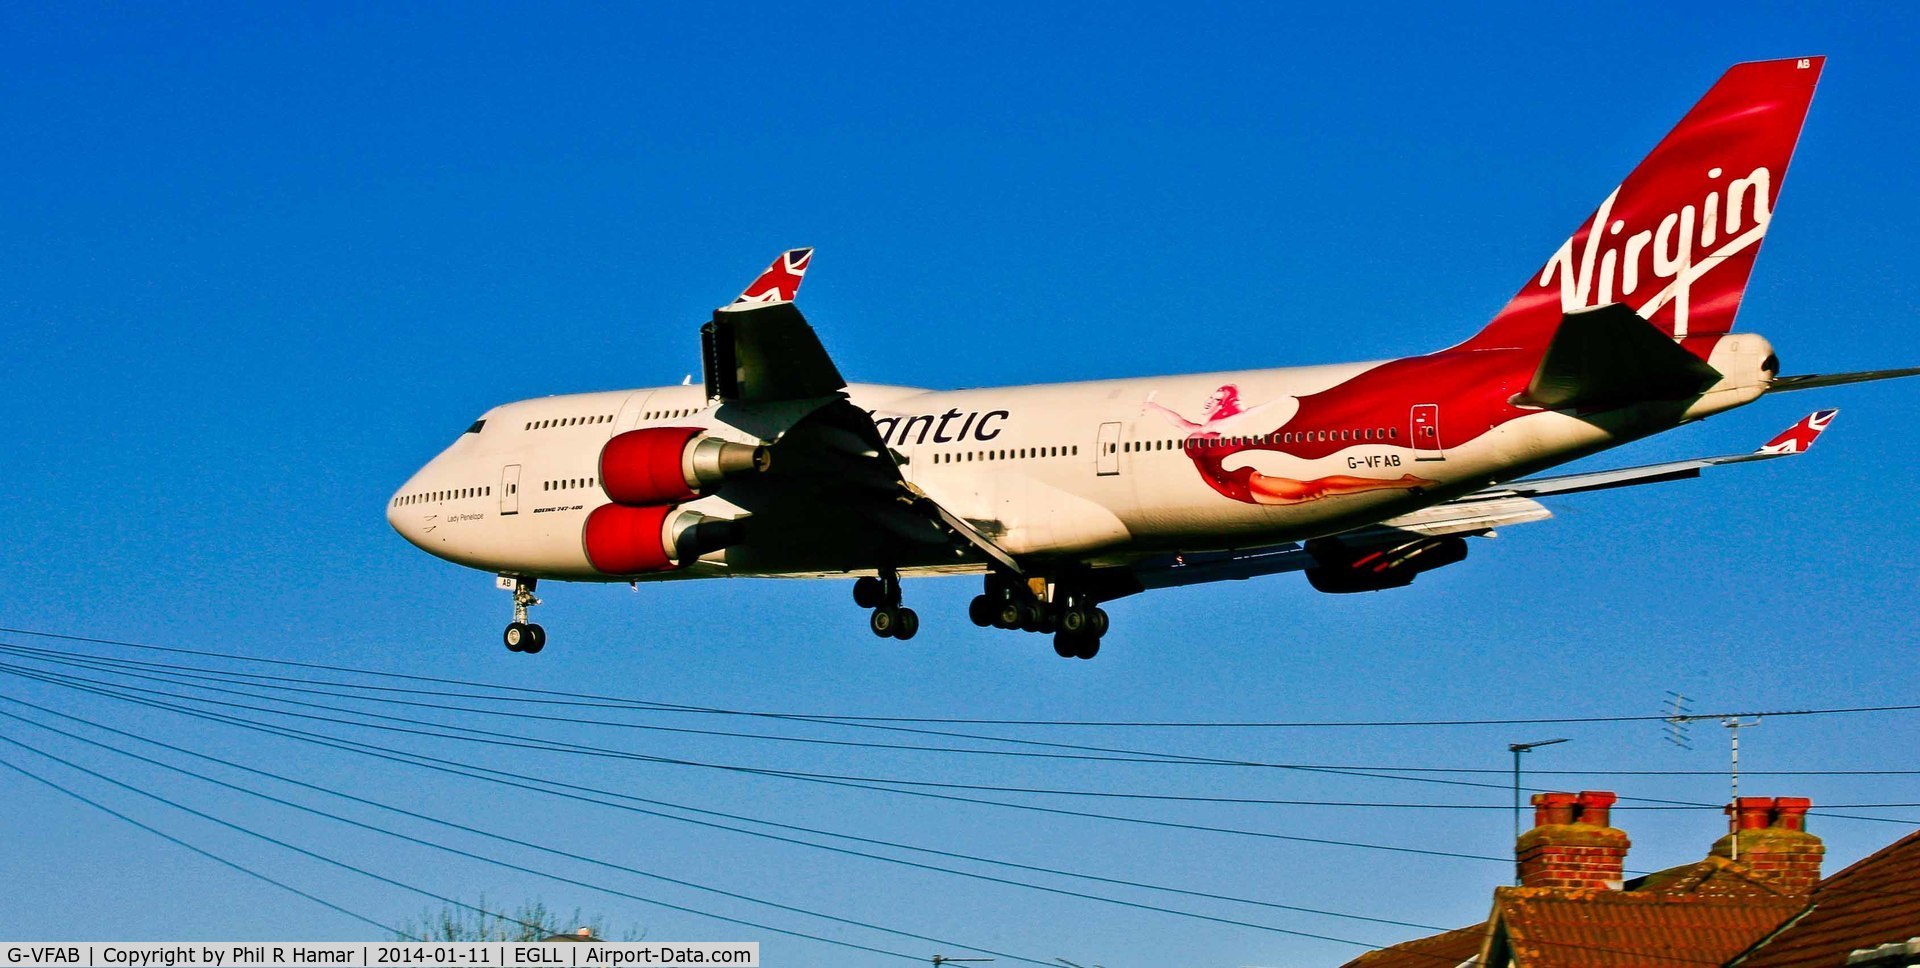 G-VFAB, 1994 Boeing 747-4Q8 C/N 24958, Virgin Atlantic, (G-VFAB) 1994 Boeing 747-4Q8, c/n 24958/1028, on approach to land on 27L Heathrow. © PhilRHama